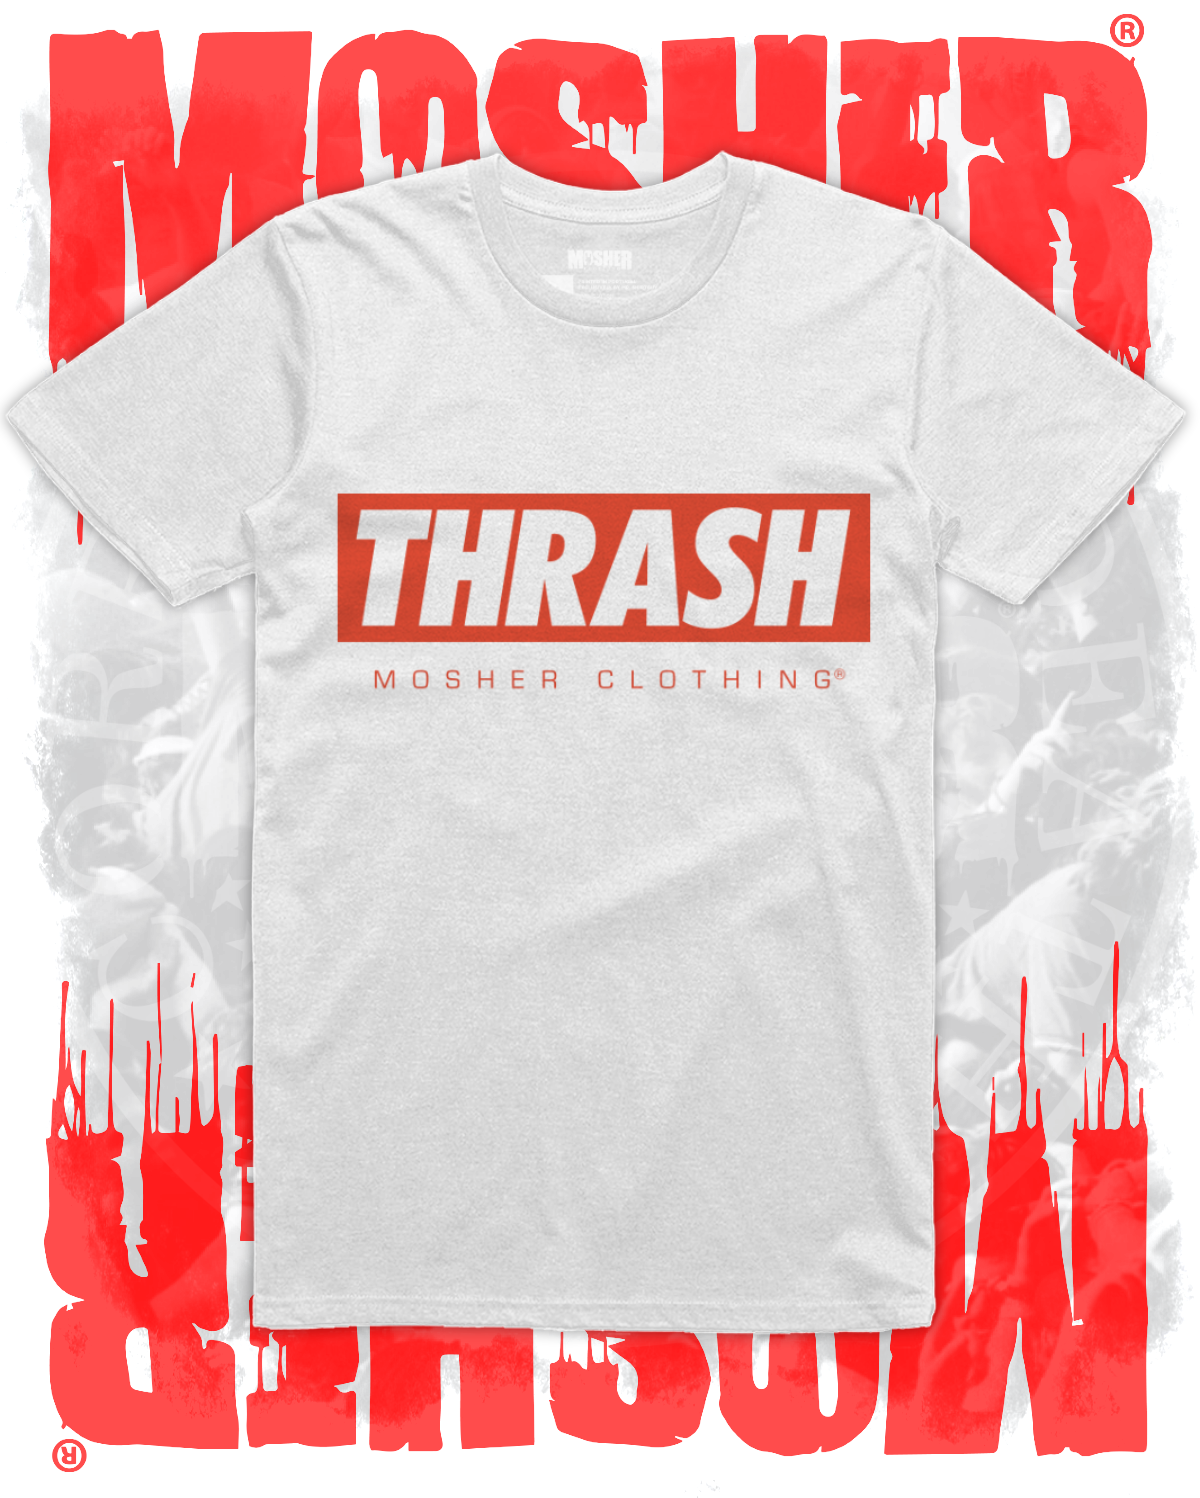 Thrash metal tshirt for metalheads - Mosher Clothing